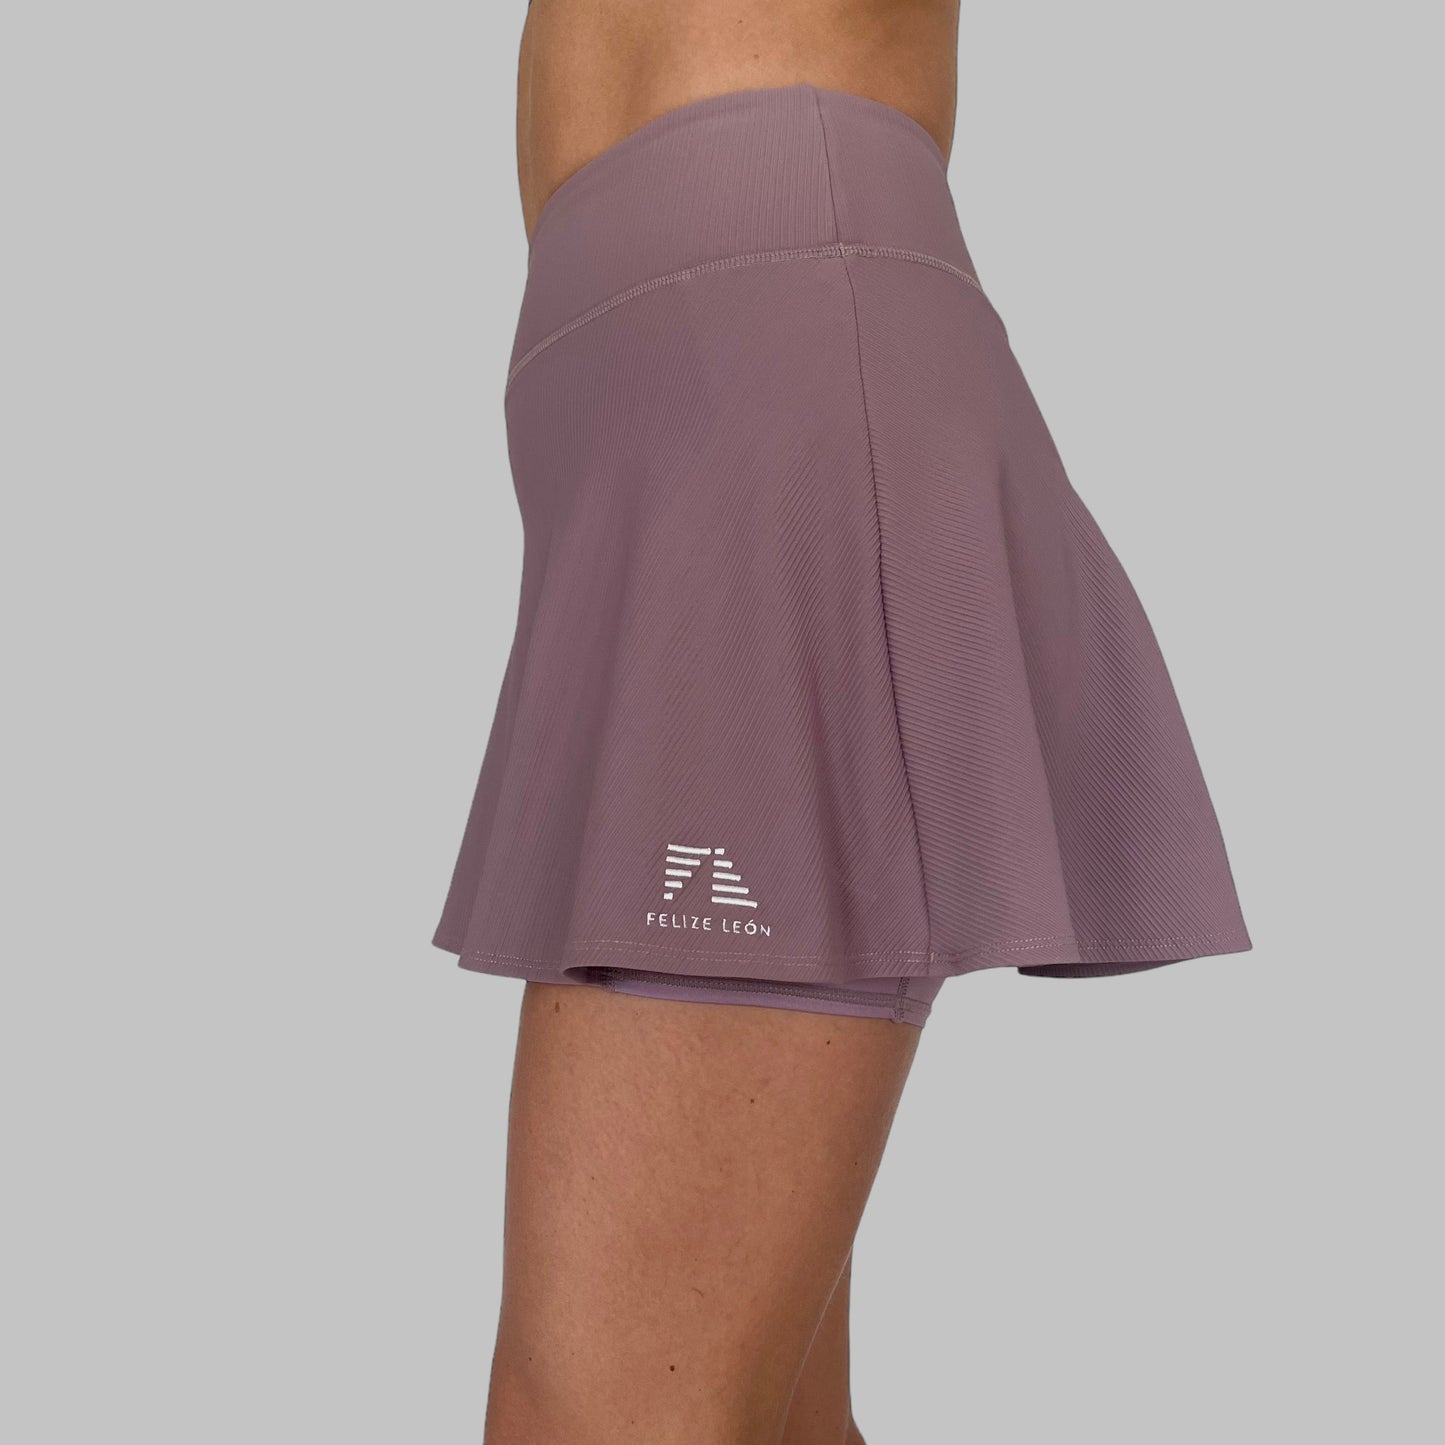 Sidovy av Maya Ribbed Skirt i dusty purple, highlightar kjolens fina fall och bekväma midja.